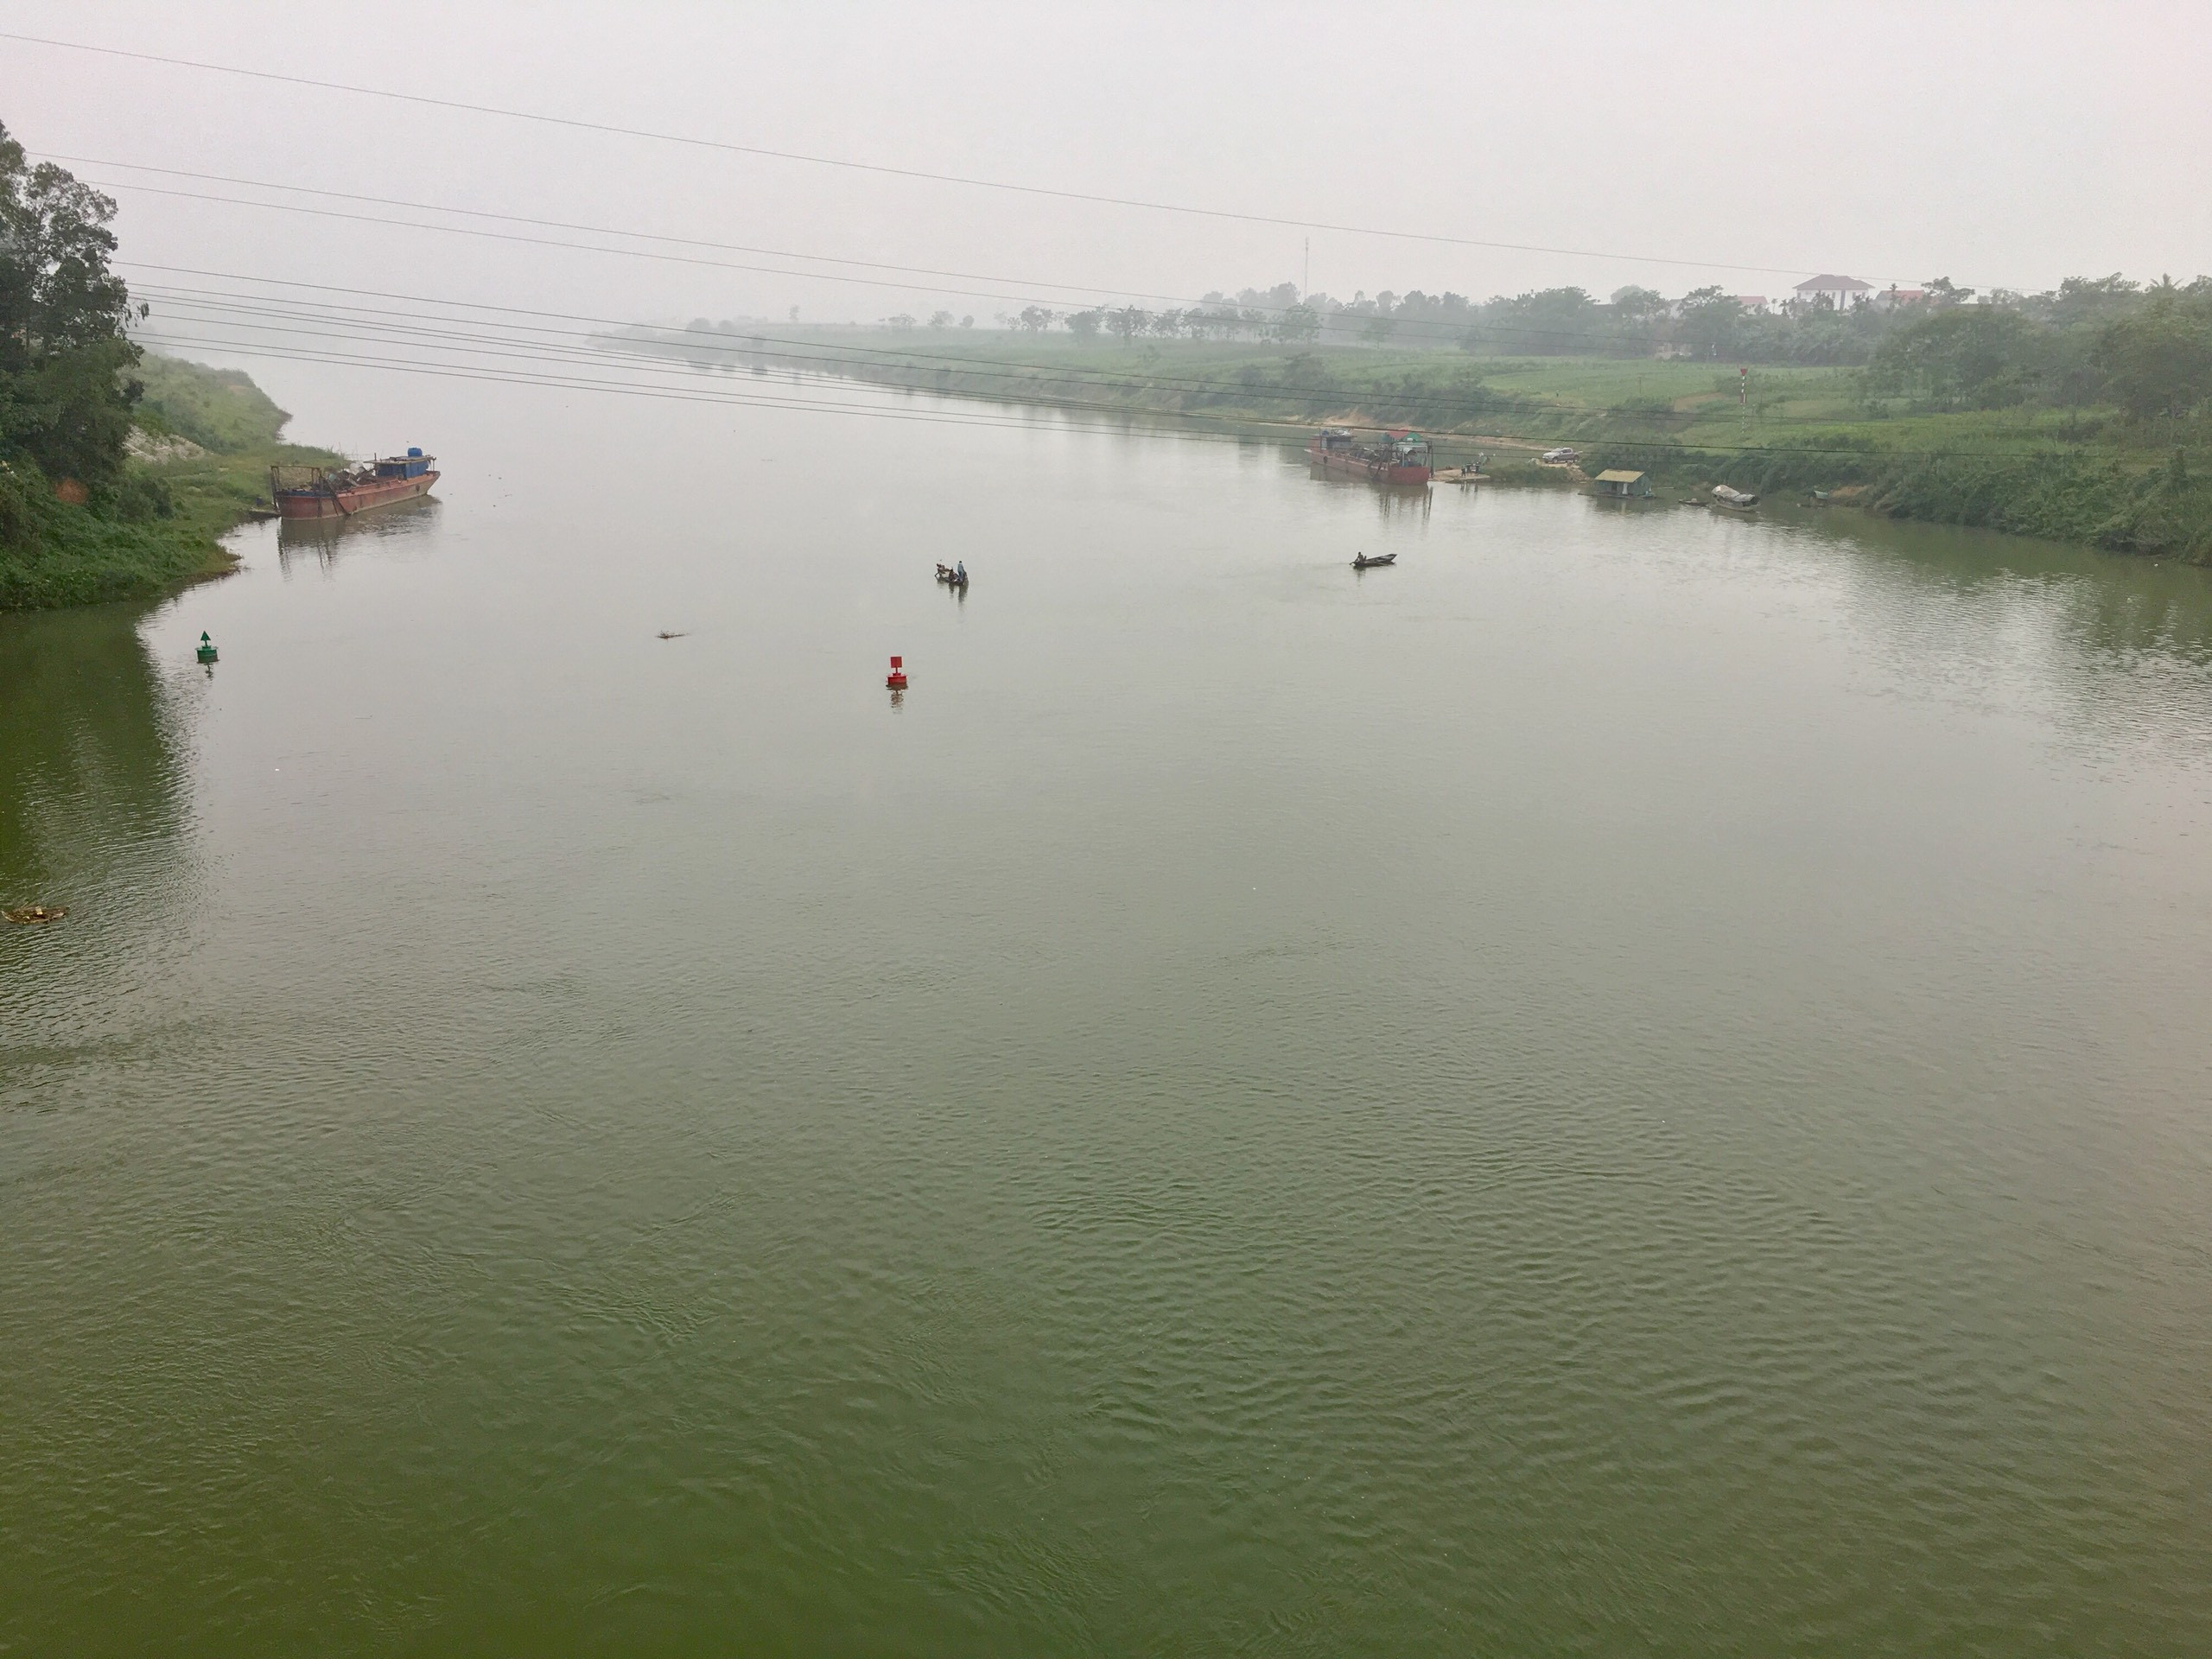 Khu vực sông Lam nơi nạn nhân nhảy cầu tự vẫn.Ảnh: